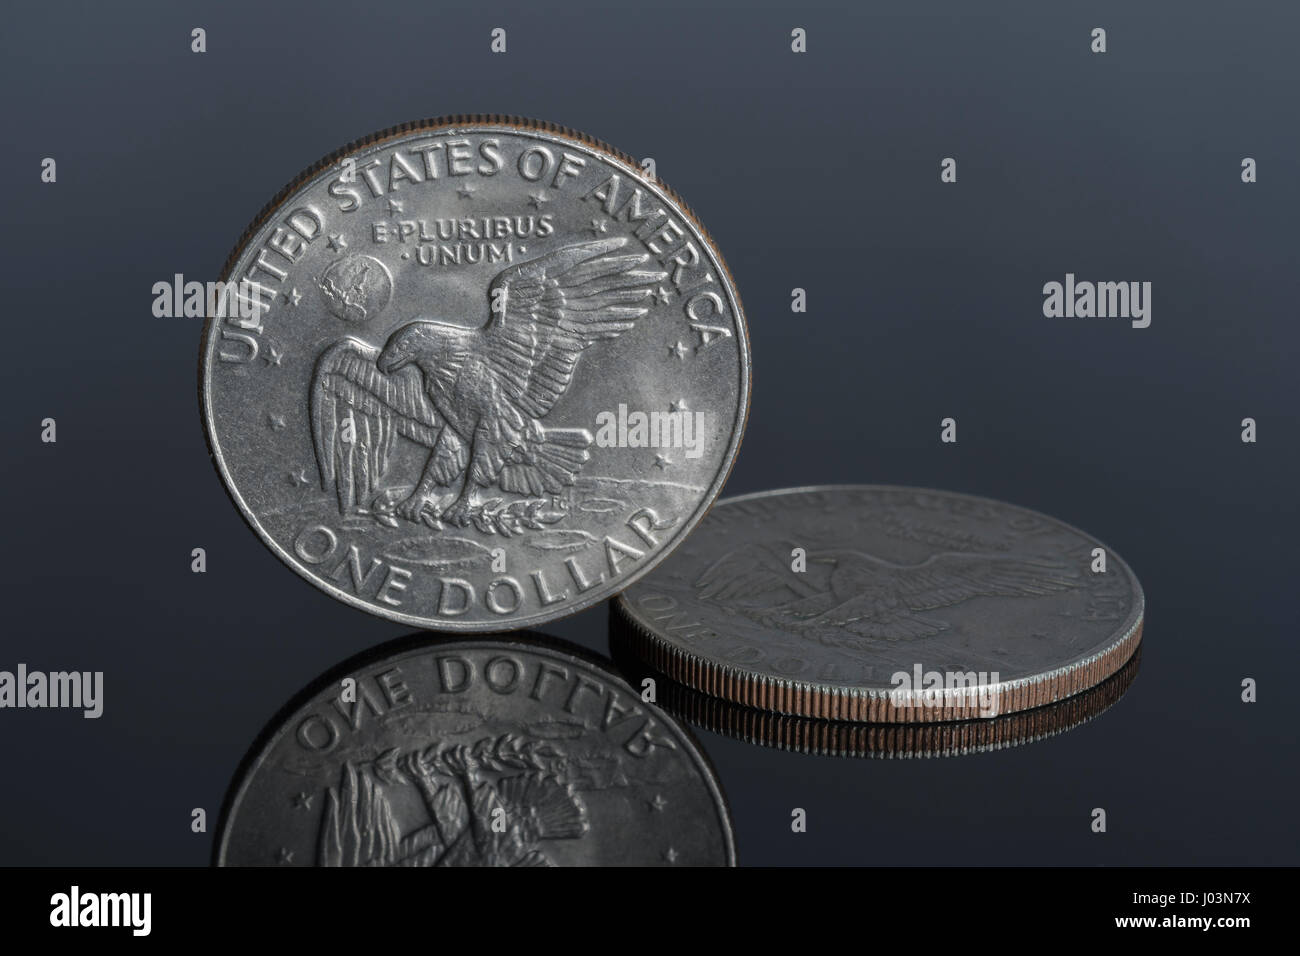 1-Dollar- / $1-Dollar-Münze AUF dunklem Hintergrund - für den Wechselkurs Dollar / US-Dollar / Dollar, US-Finanzmärkte, US-Bankenkrise. Stockfoto